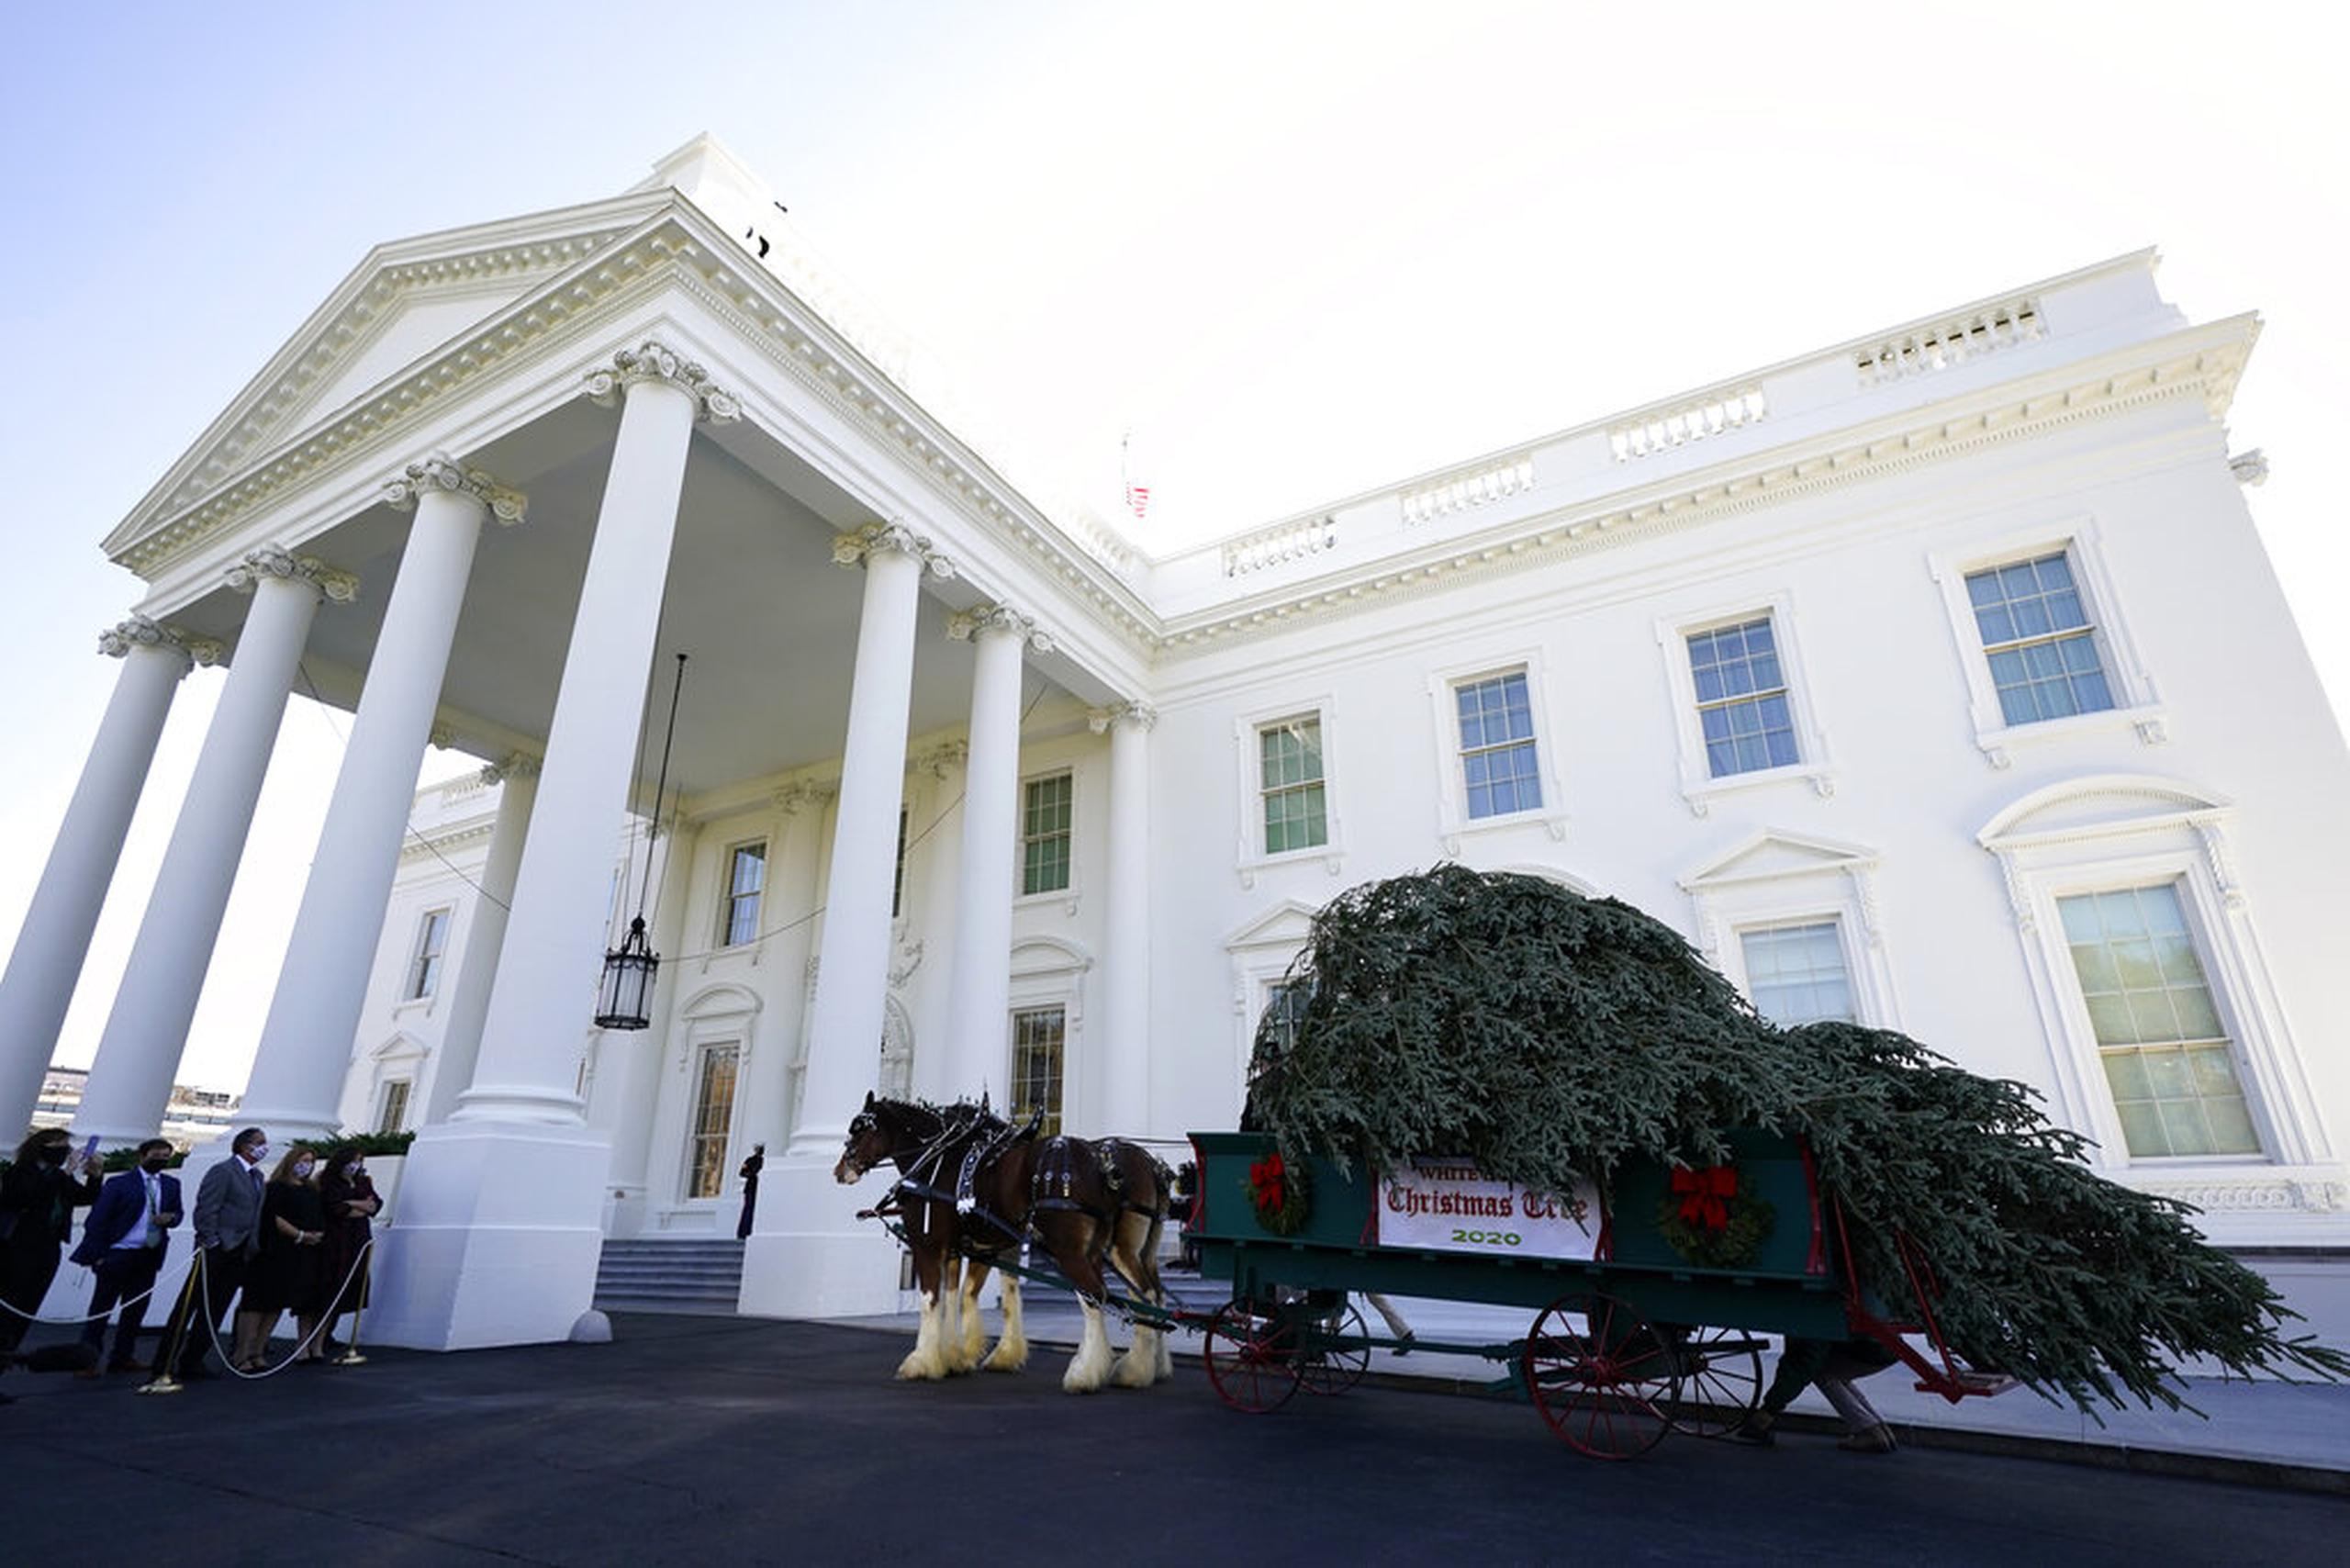 El árbol de Navidad de la Casa Blanca llegó ayer, lunes, en una carroza tirada por caballos.